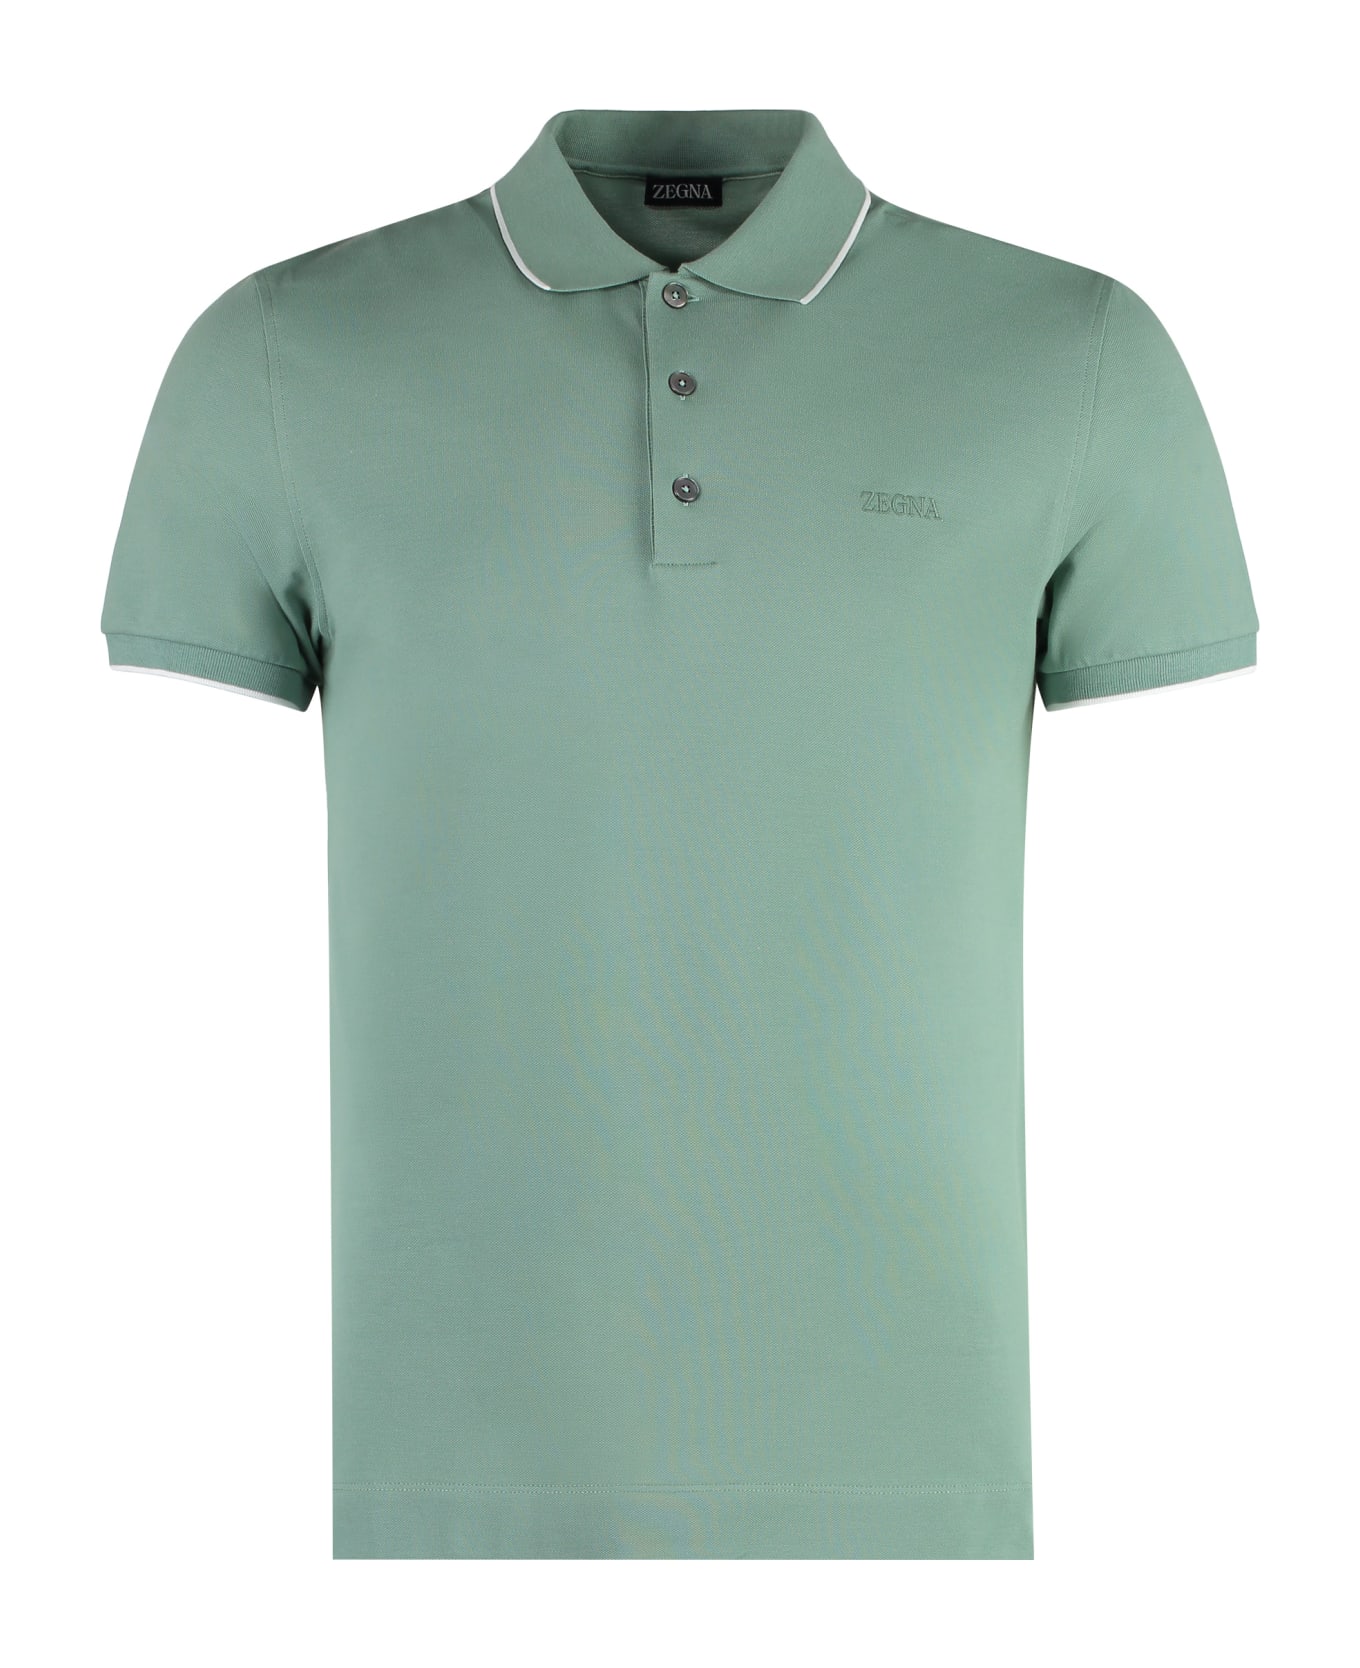 Zegna Short Sleeve Cotton Polo Shirt - green